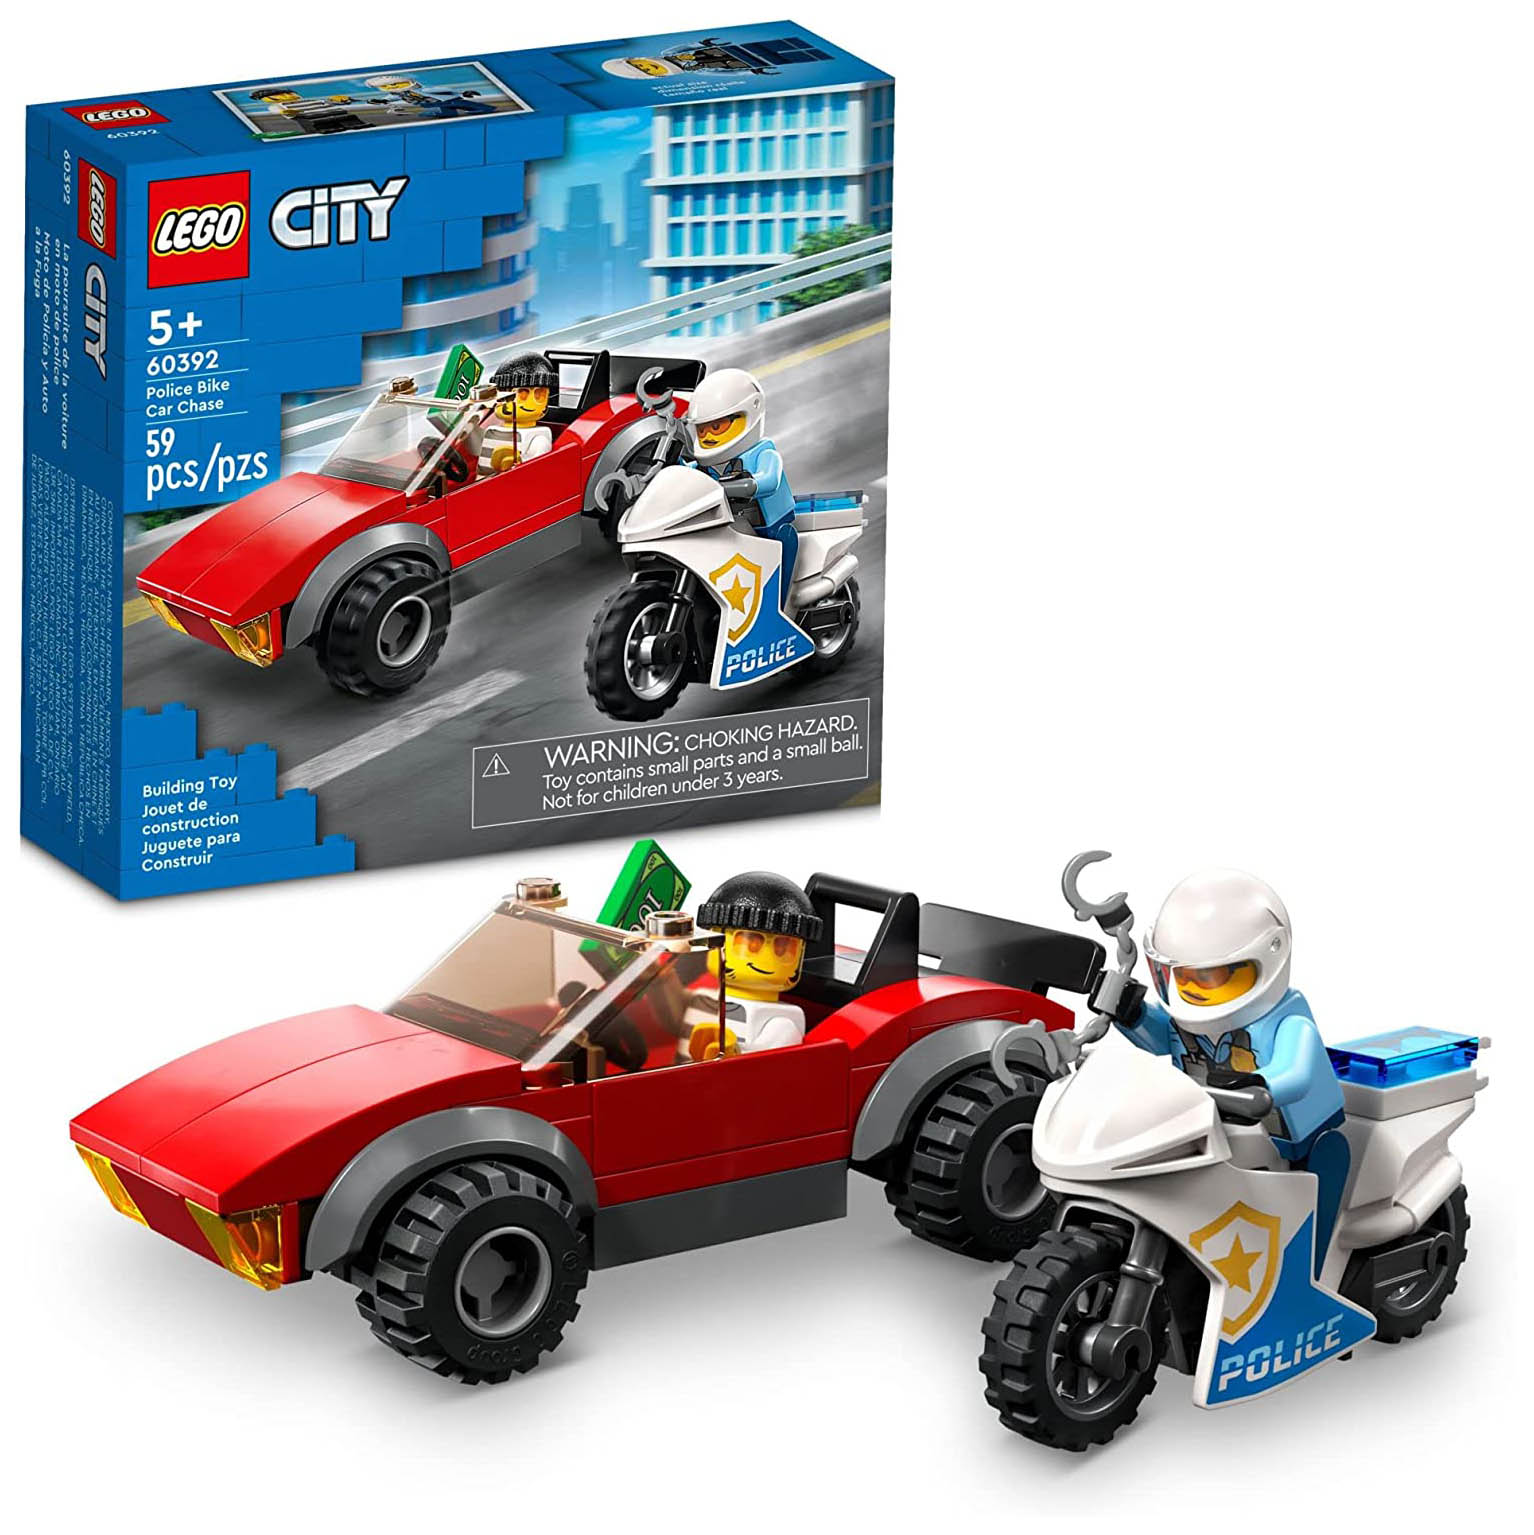 Конструктор LEGO City Полицейская погоня на байке, 59 деталей, 60392 конструктор lego city полицейская машина 94 детали 60312